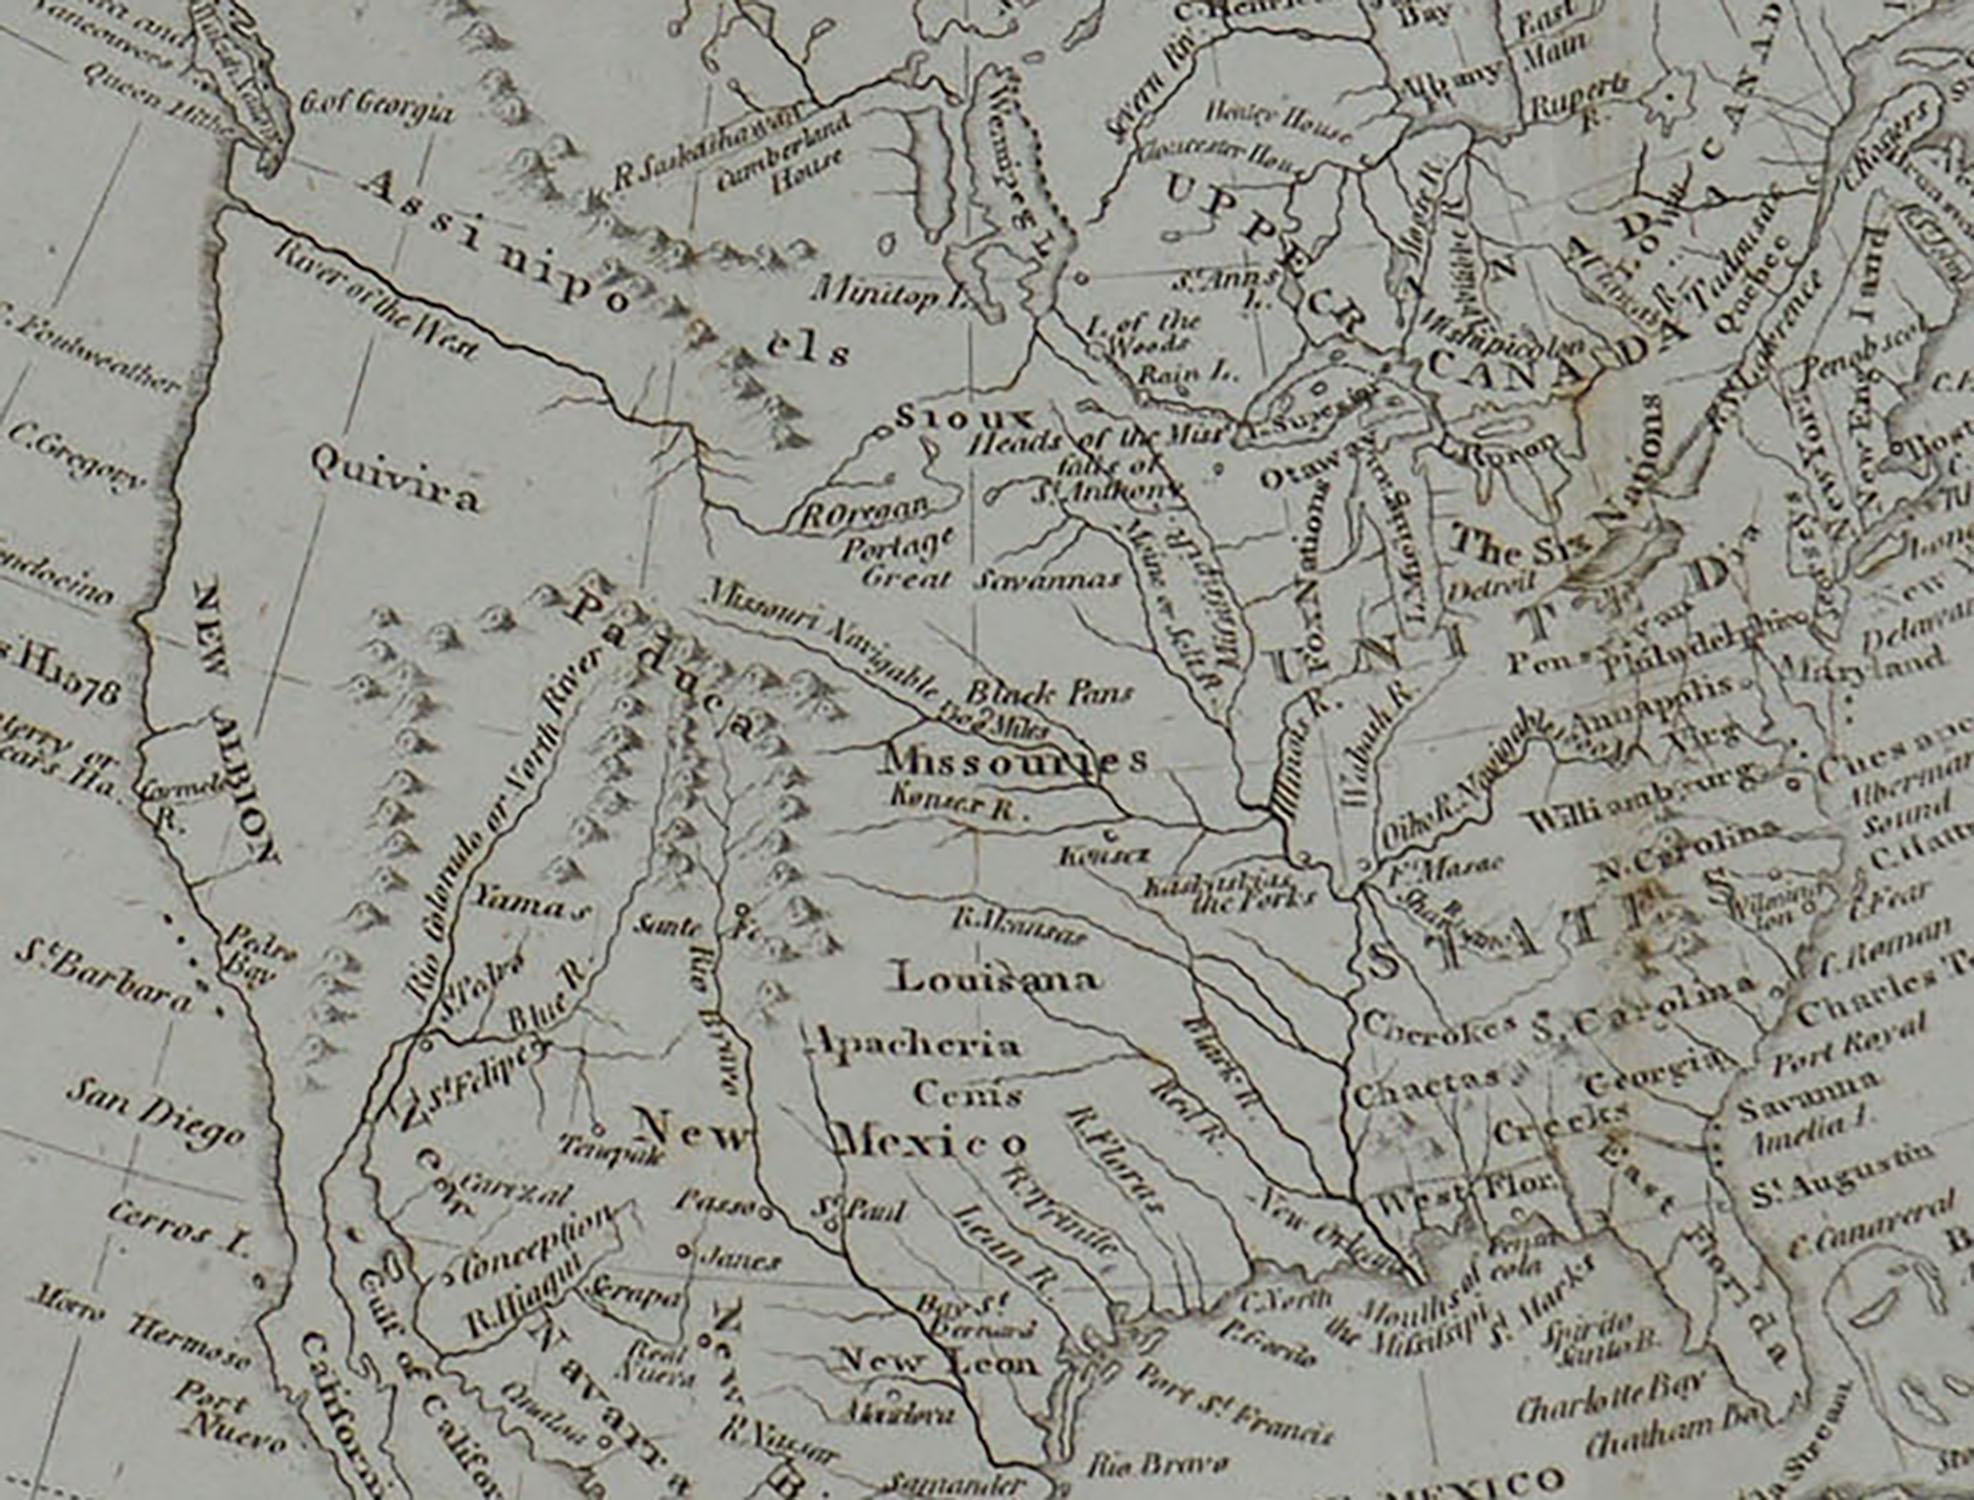 Other Original Antique Map of North America, circa 1800